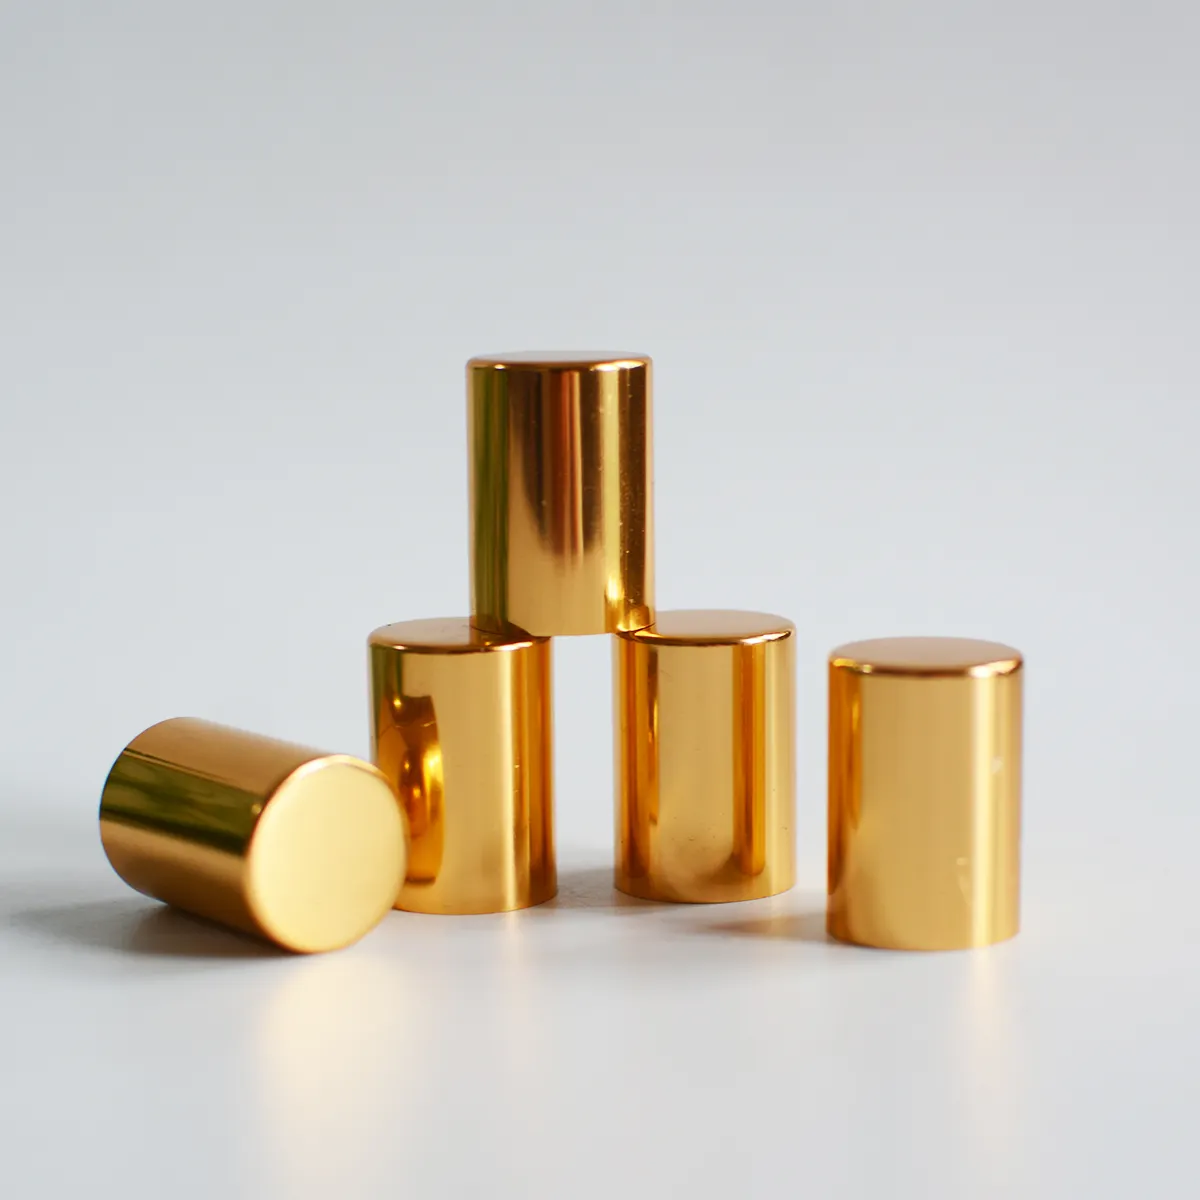 Оптовая продажа упаковочных принадлежностей, Золотой металлический роликовый колпачок для крышки бутылки 16 мм